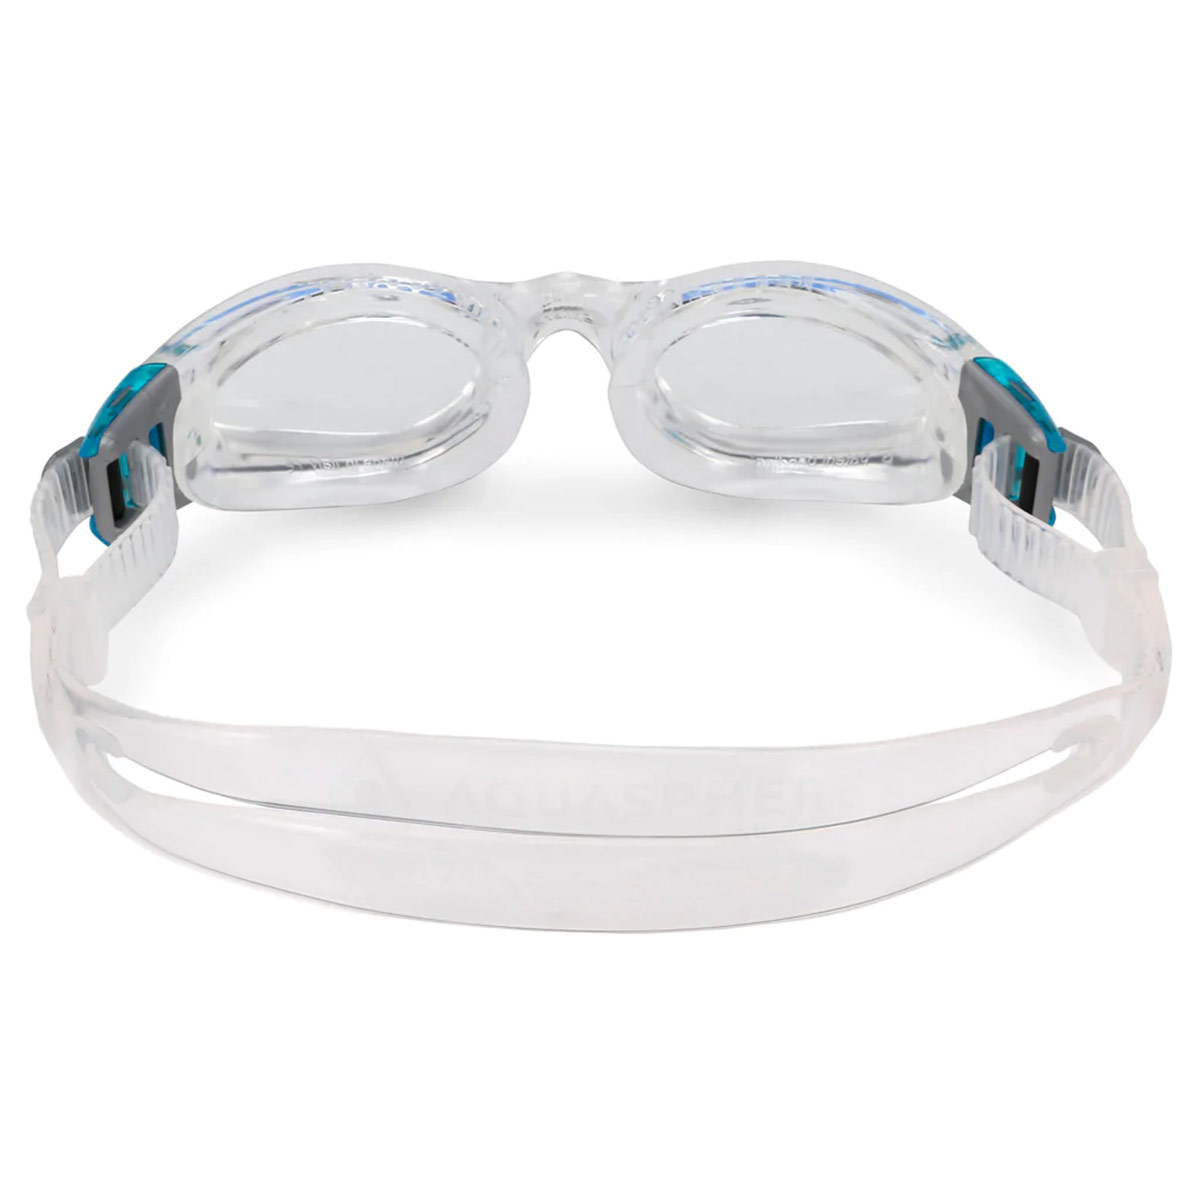 Óculos de protecção da lente transparente Aqua Sphere Kaiman Compact Clear Lens - Transparente/azul